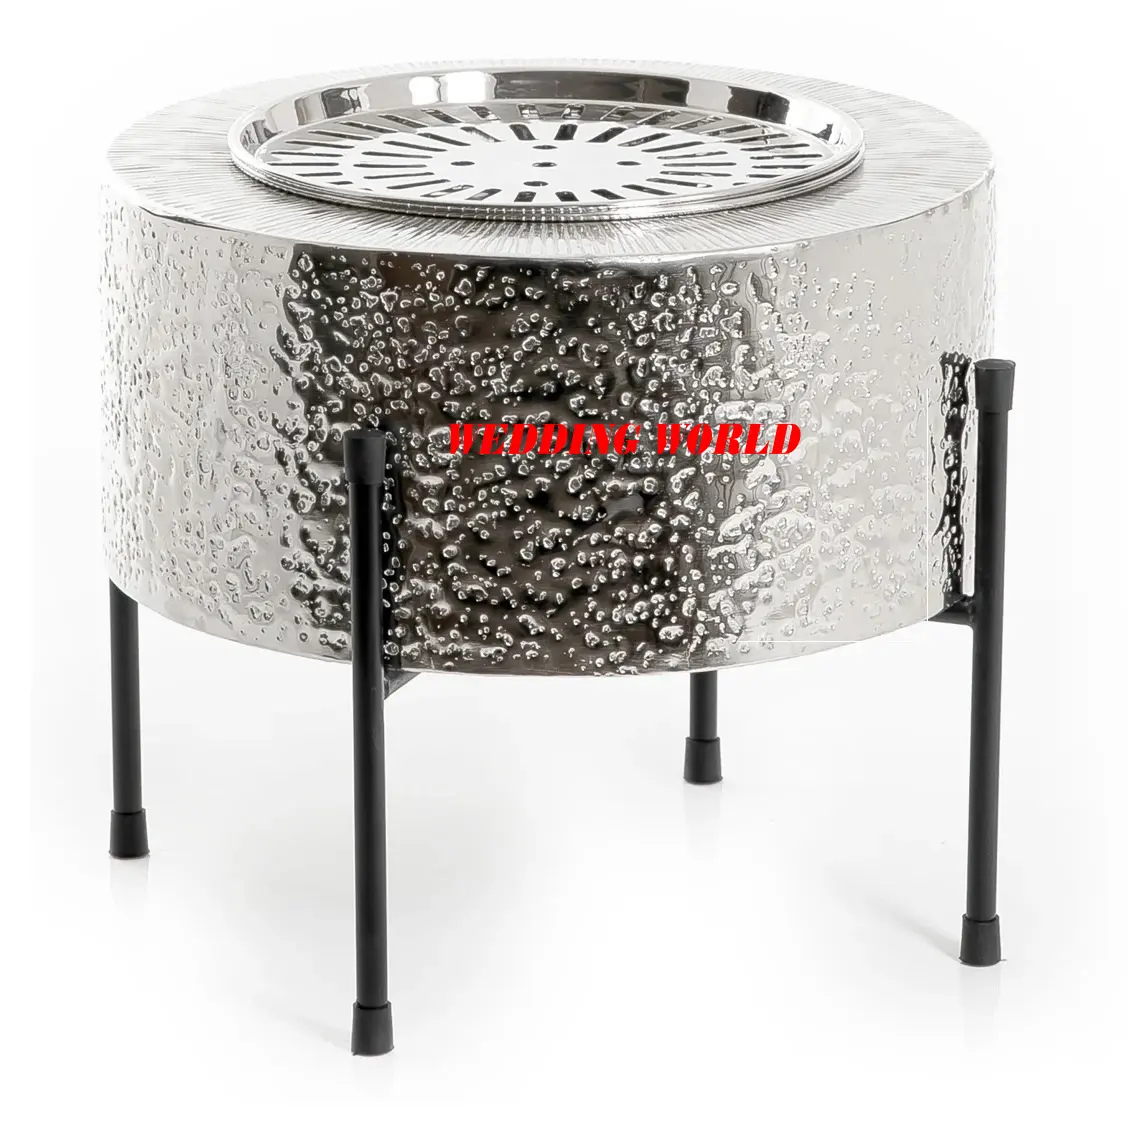 Riscaldatore Dallah in metallo con supporto supporto per teiera di lusso fatto a mano di qualità Premium riscaldatore in metallo di vendita calda di forma arrotondata